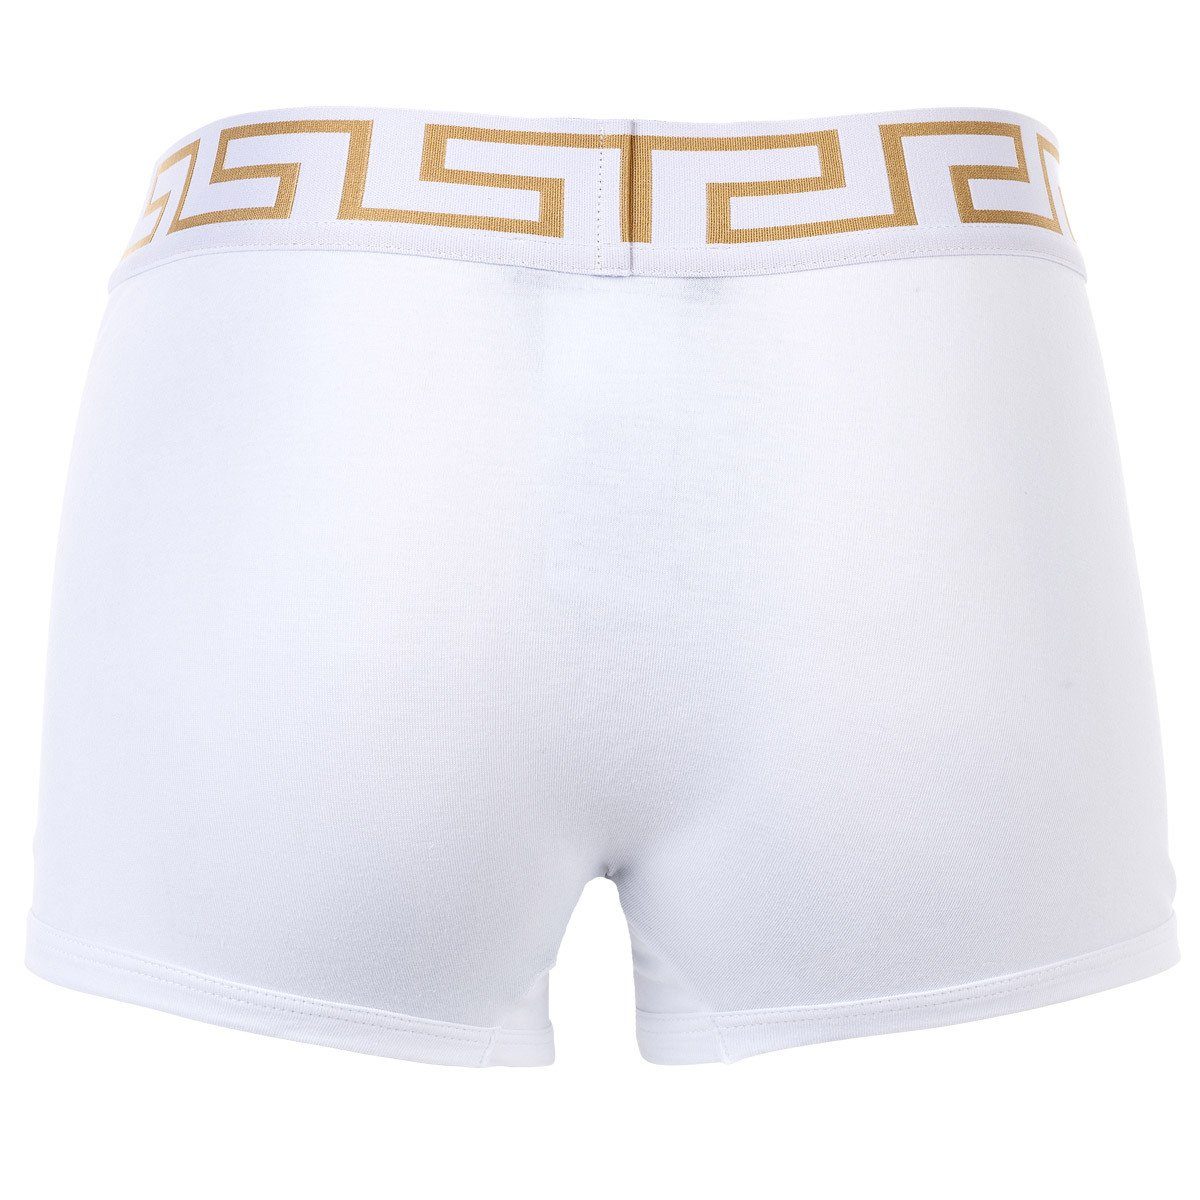 Herren Boxer Stretch Boxer Shorts - Cotton Versace Weiß TOPEKA,